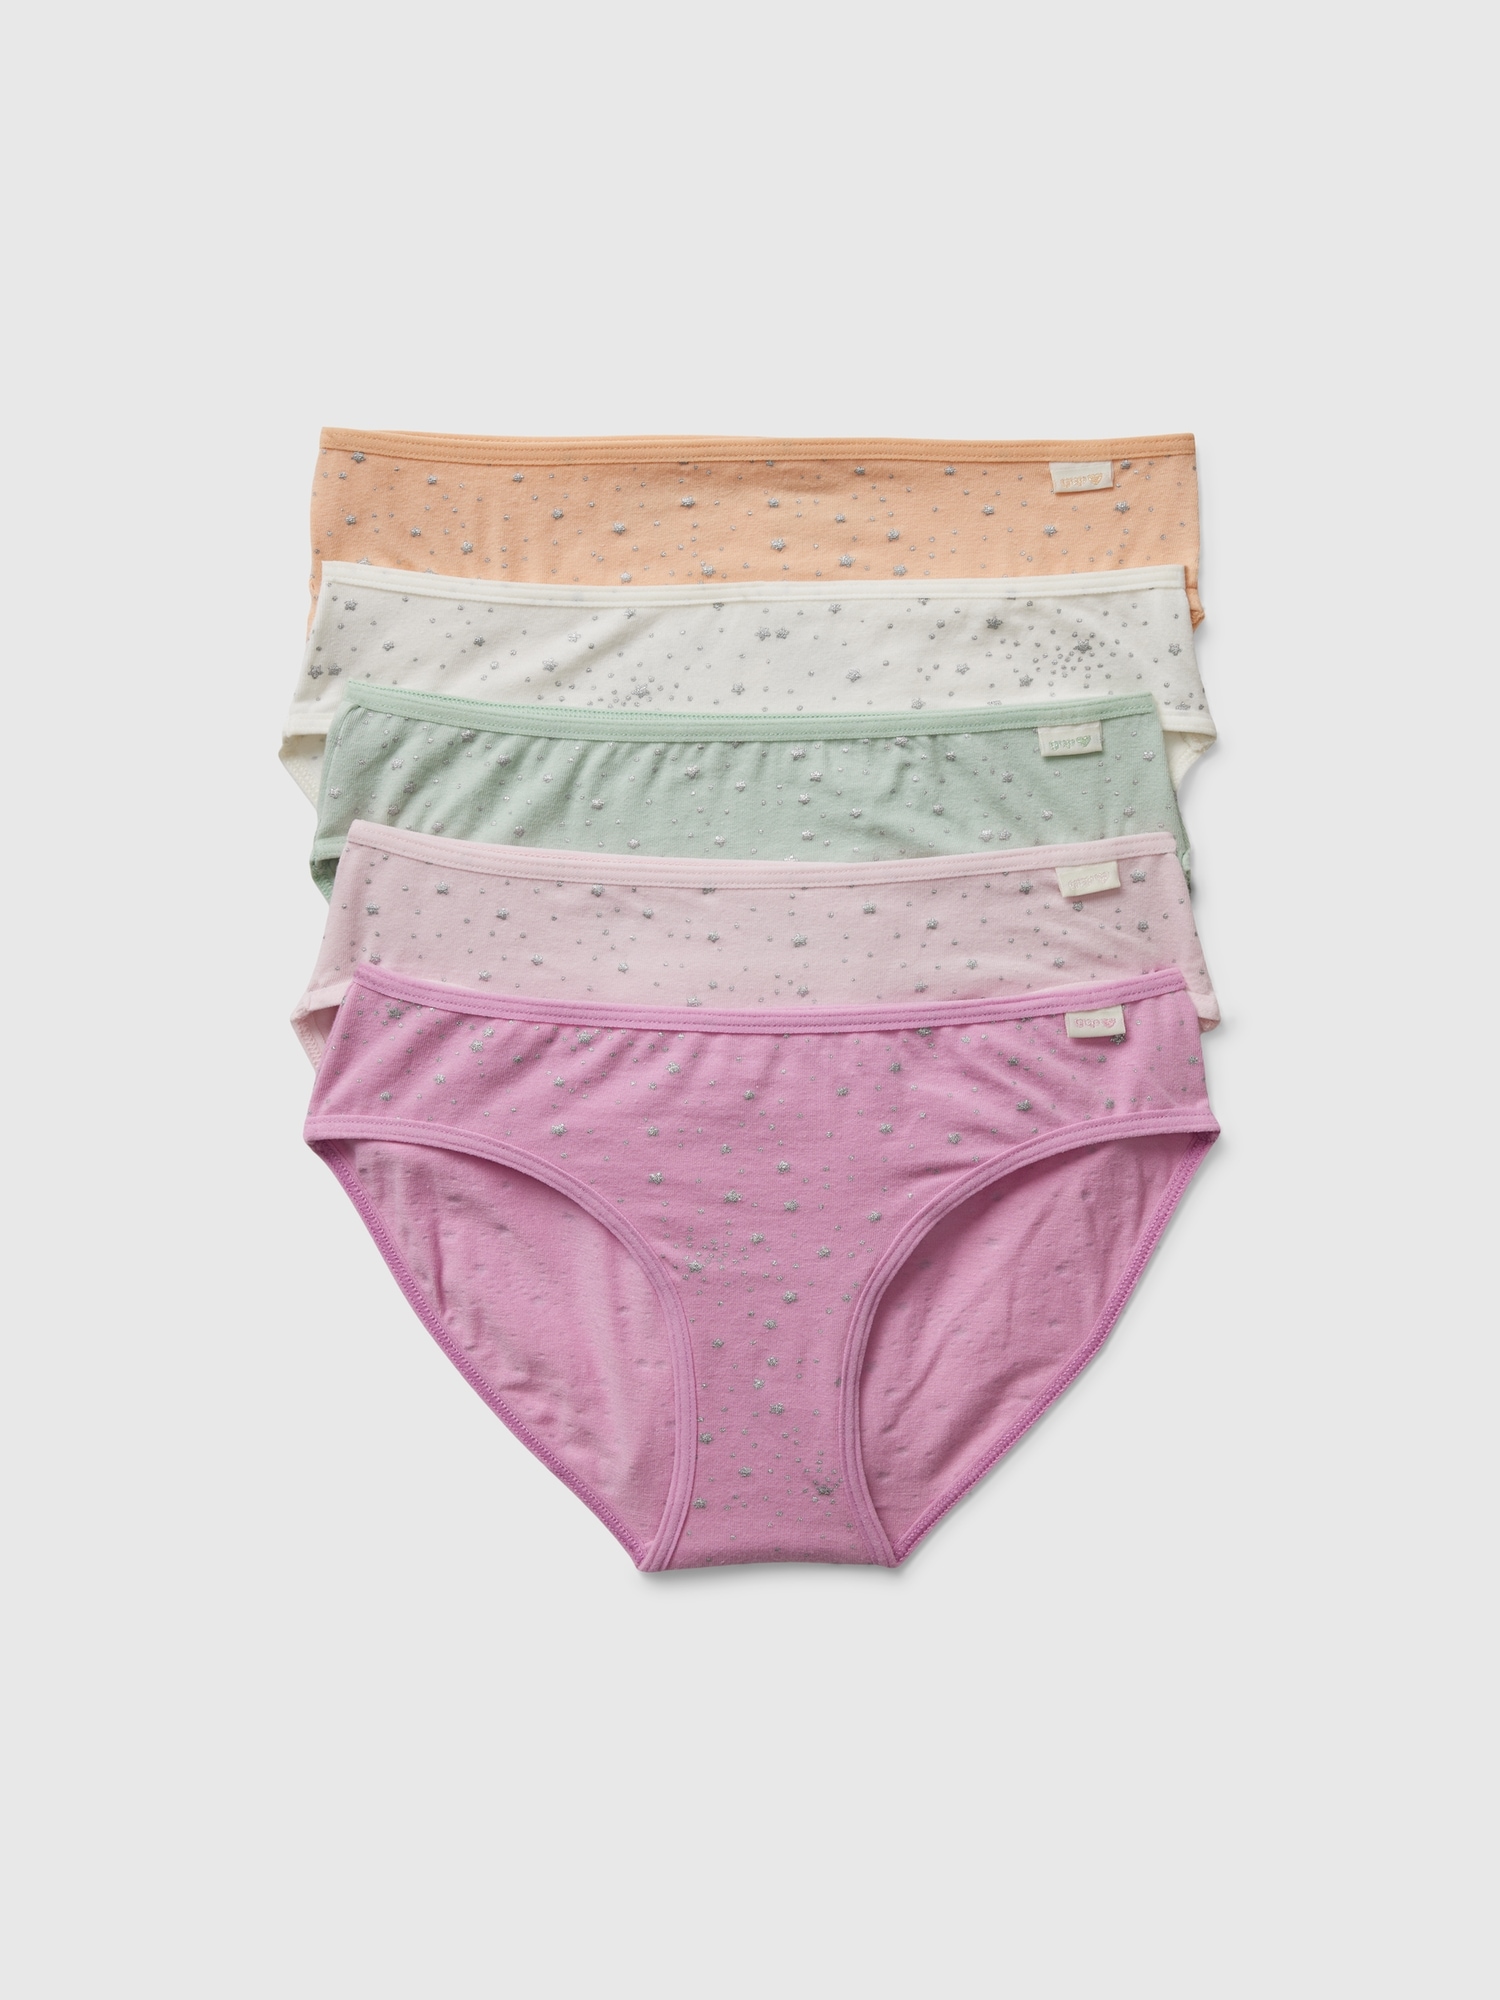 Ladies Briefs Bikini 5 Pack Underwear Knickers Lingerie Cotton